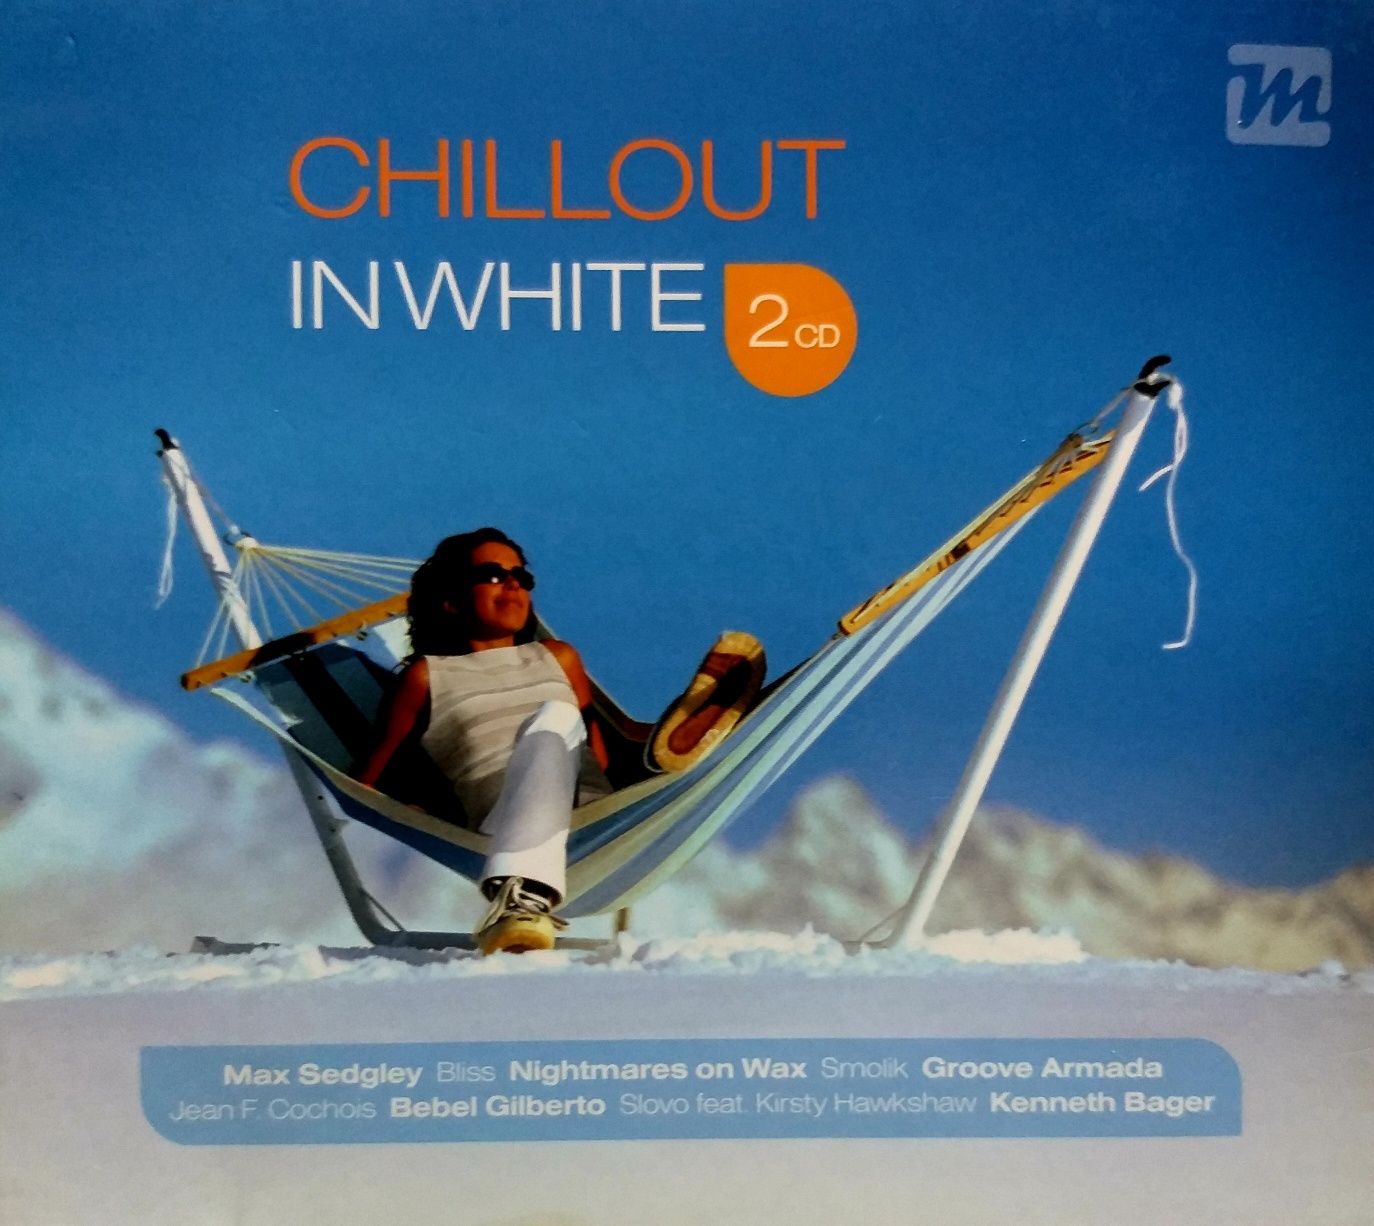 Chillout In White 2CD 2009r Apollo 440 Groove Armada Smolik